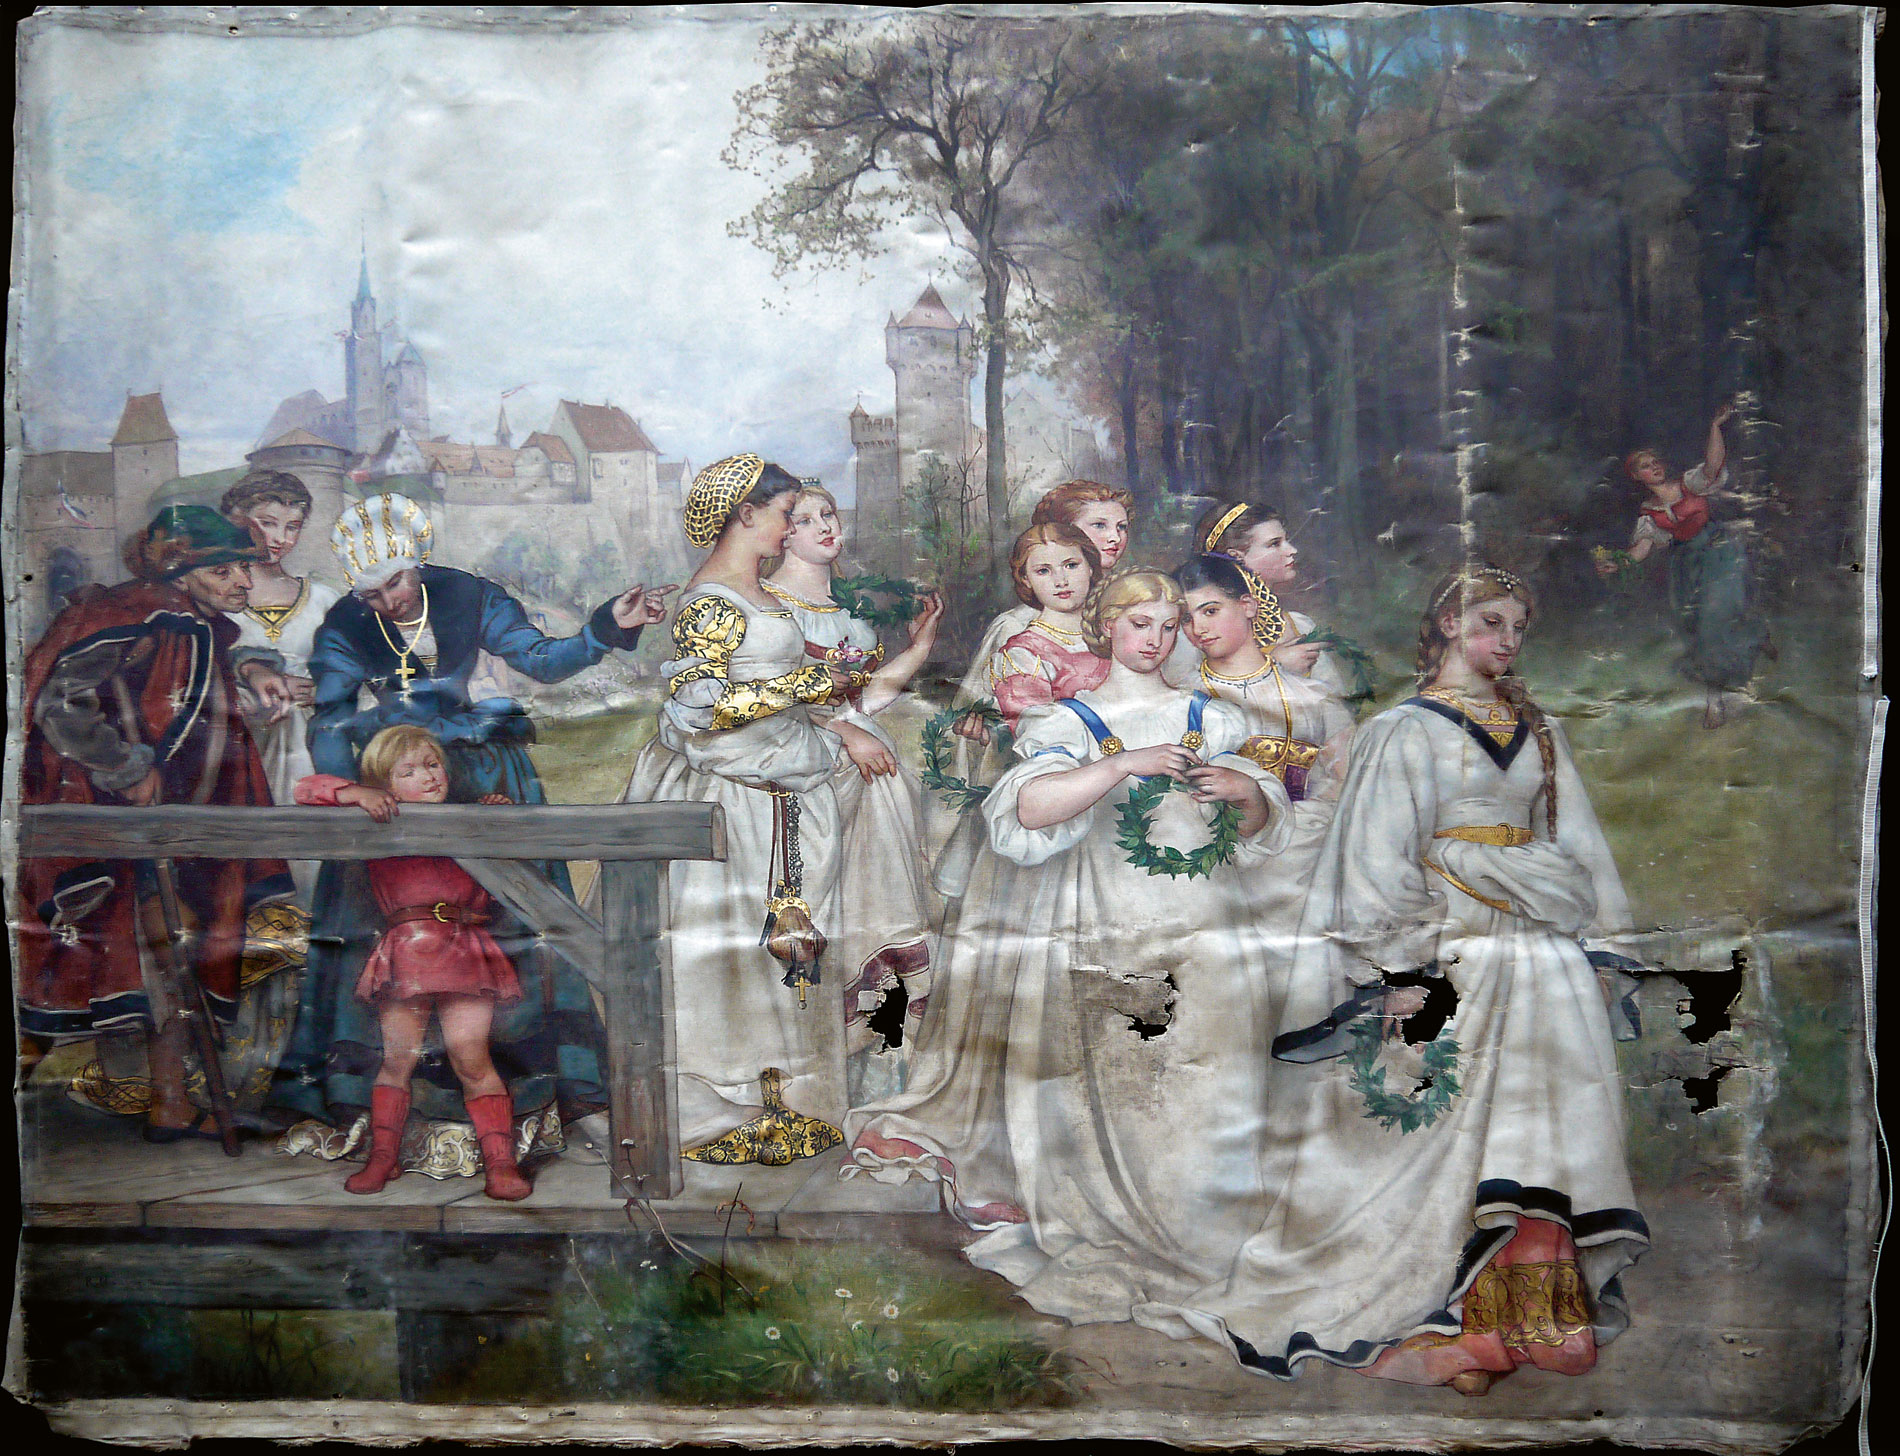 Rudolf Henneberg, Allegorischer Brautzug, 1872, ca. 204 × 220 cm; wie auch die beiden anderen hier abgebildeten Gemälde derzeit als Leihgabe im Centrum Judaicum für die im November 2012 geplante Ausstellung „Moses Mendelssohn: Freunde, Feinde und – Familie“